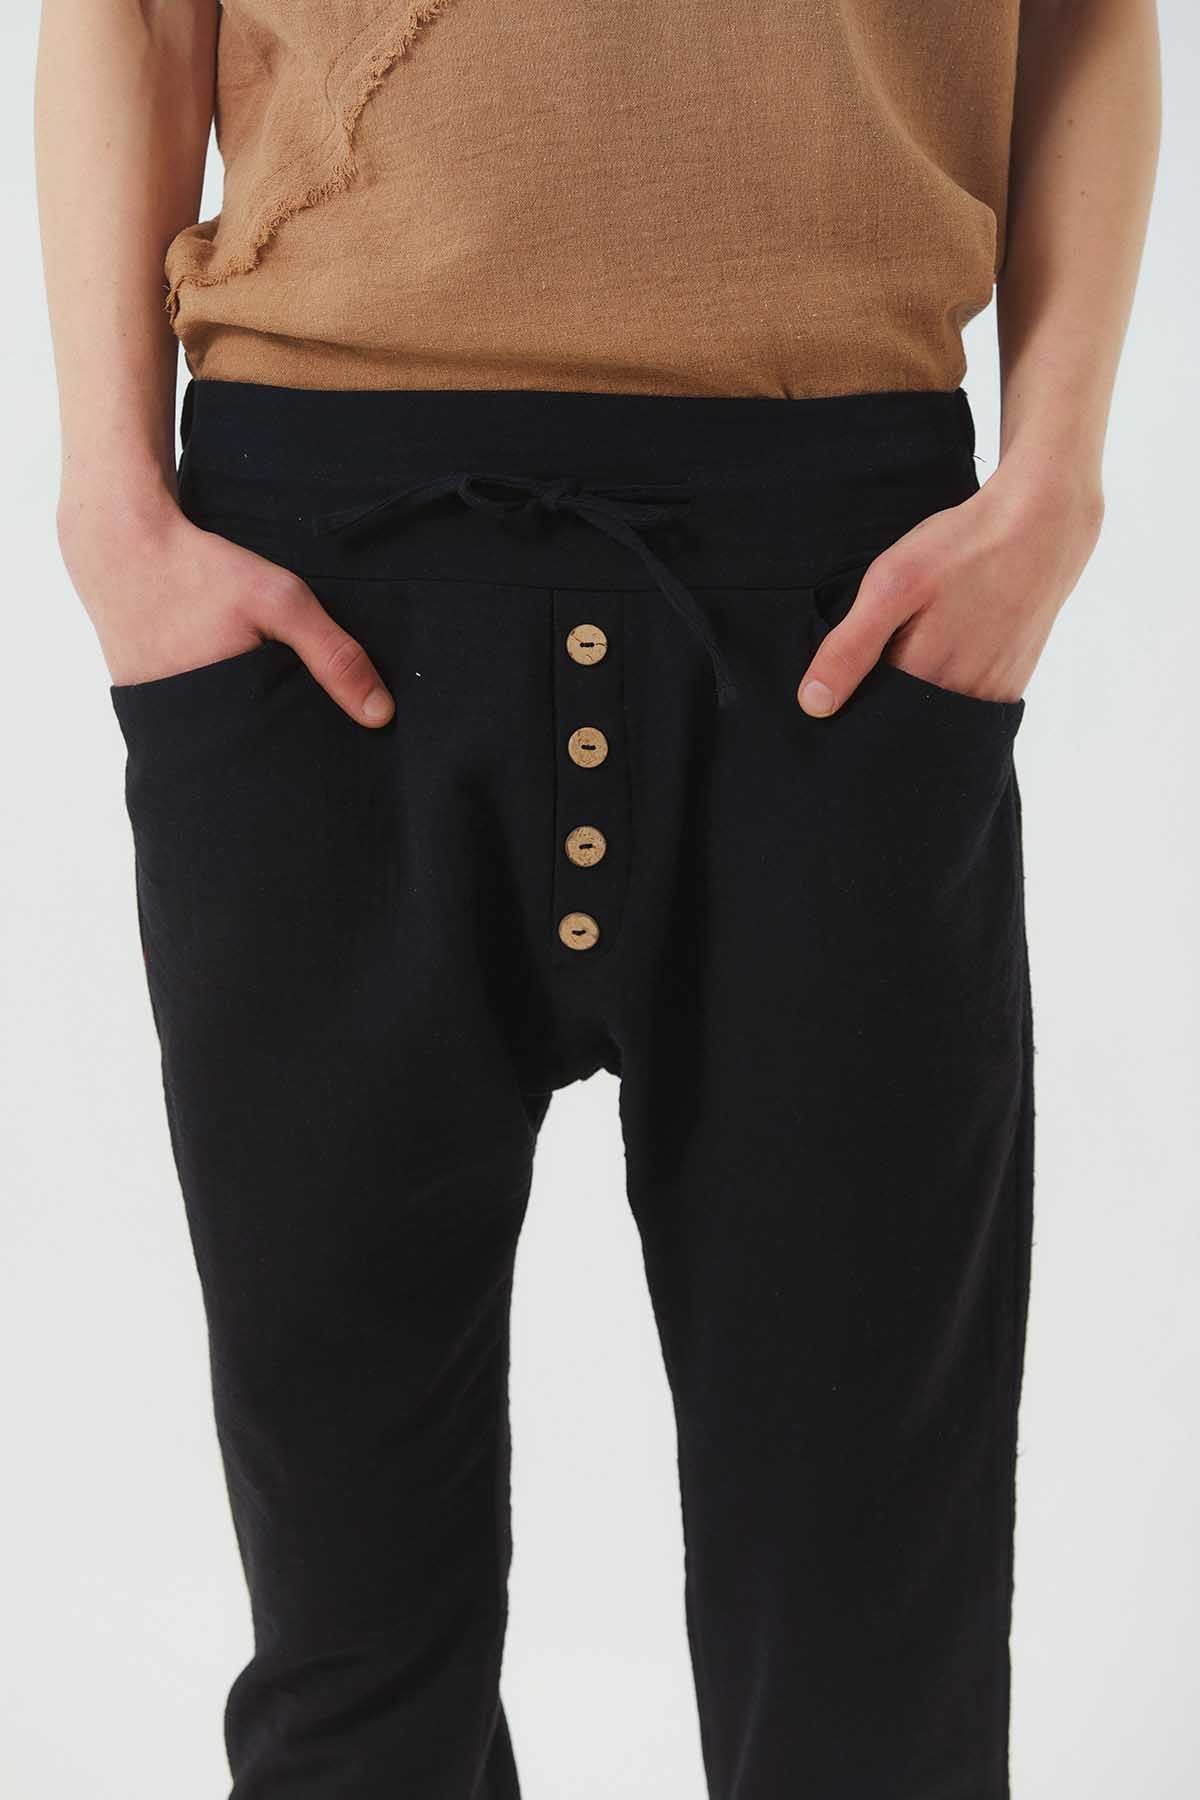 Comfy Men's Harem Capri Pants Black